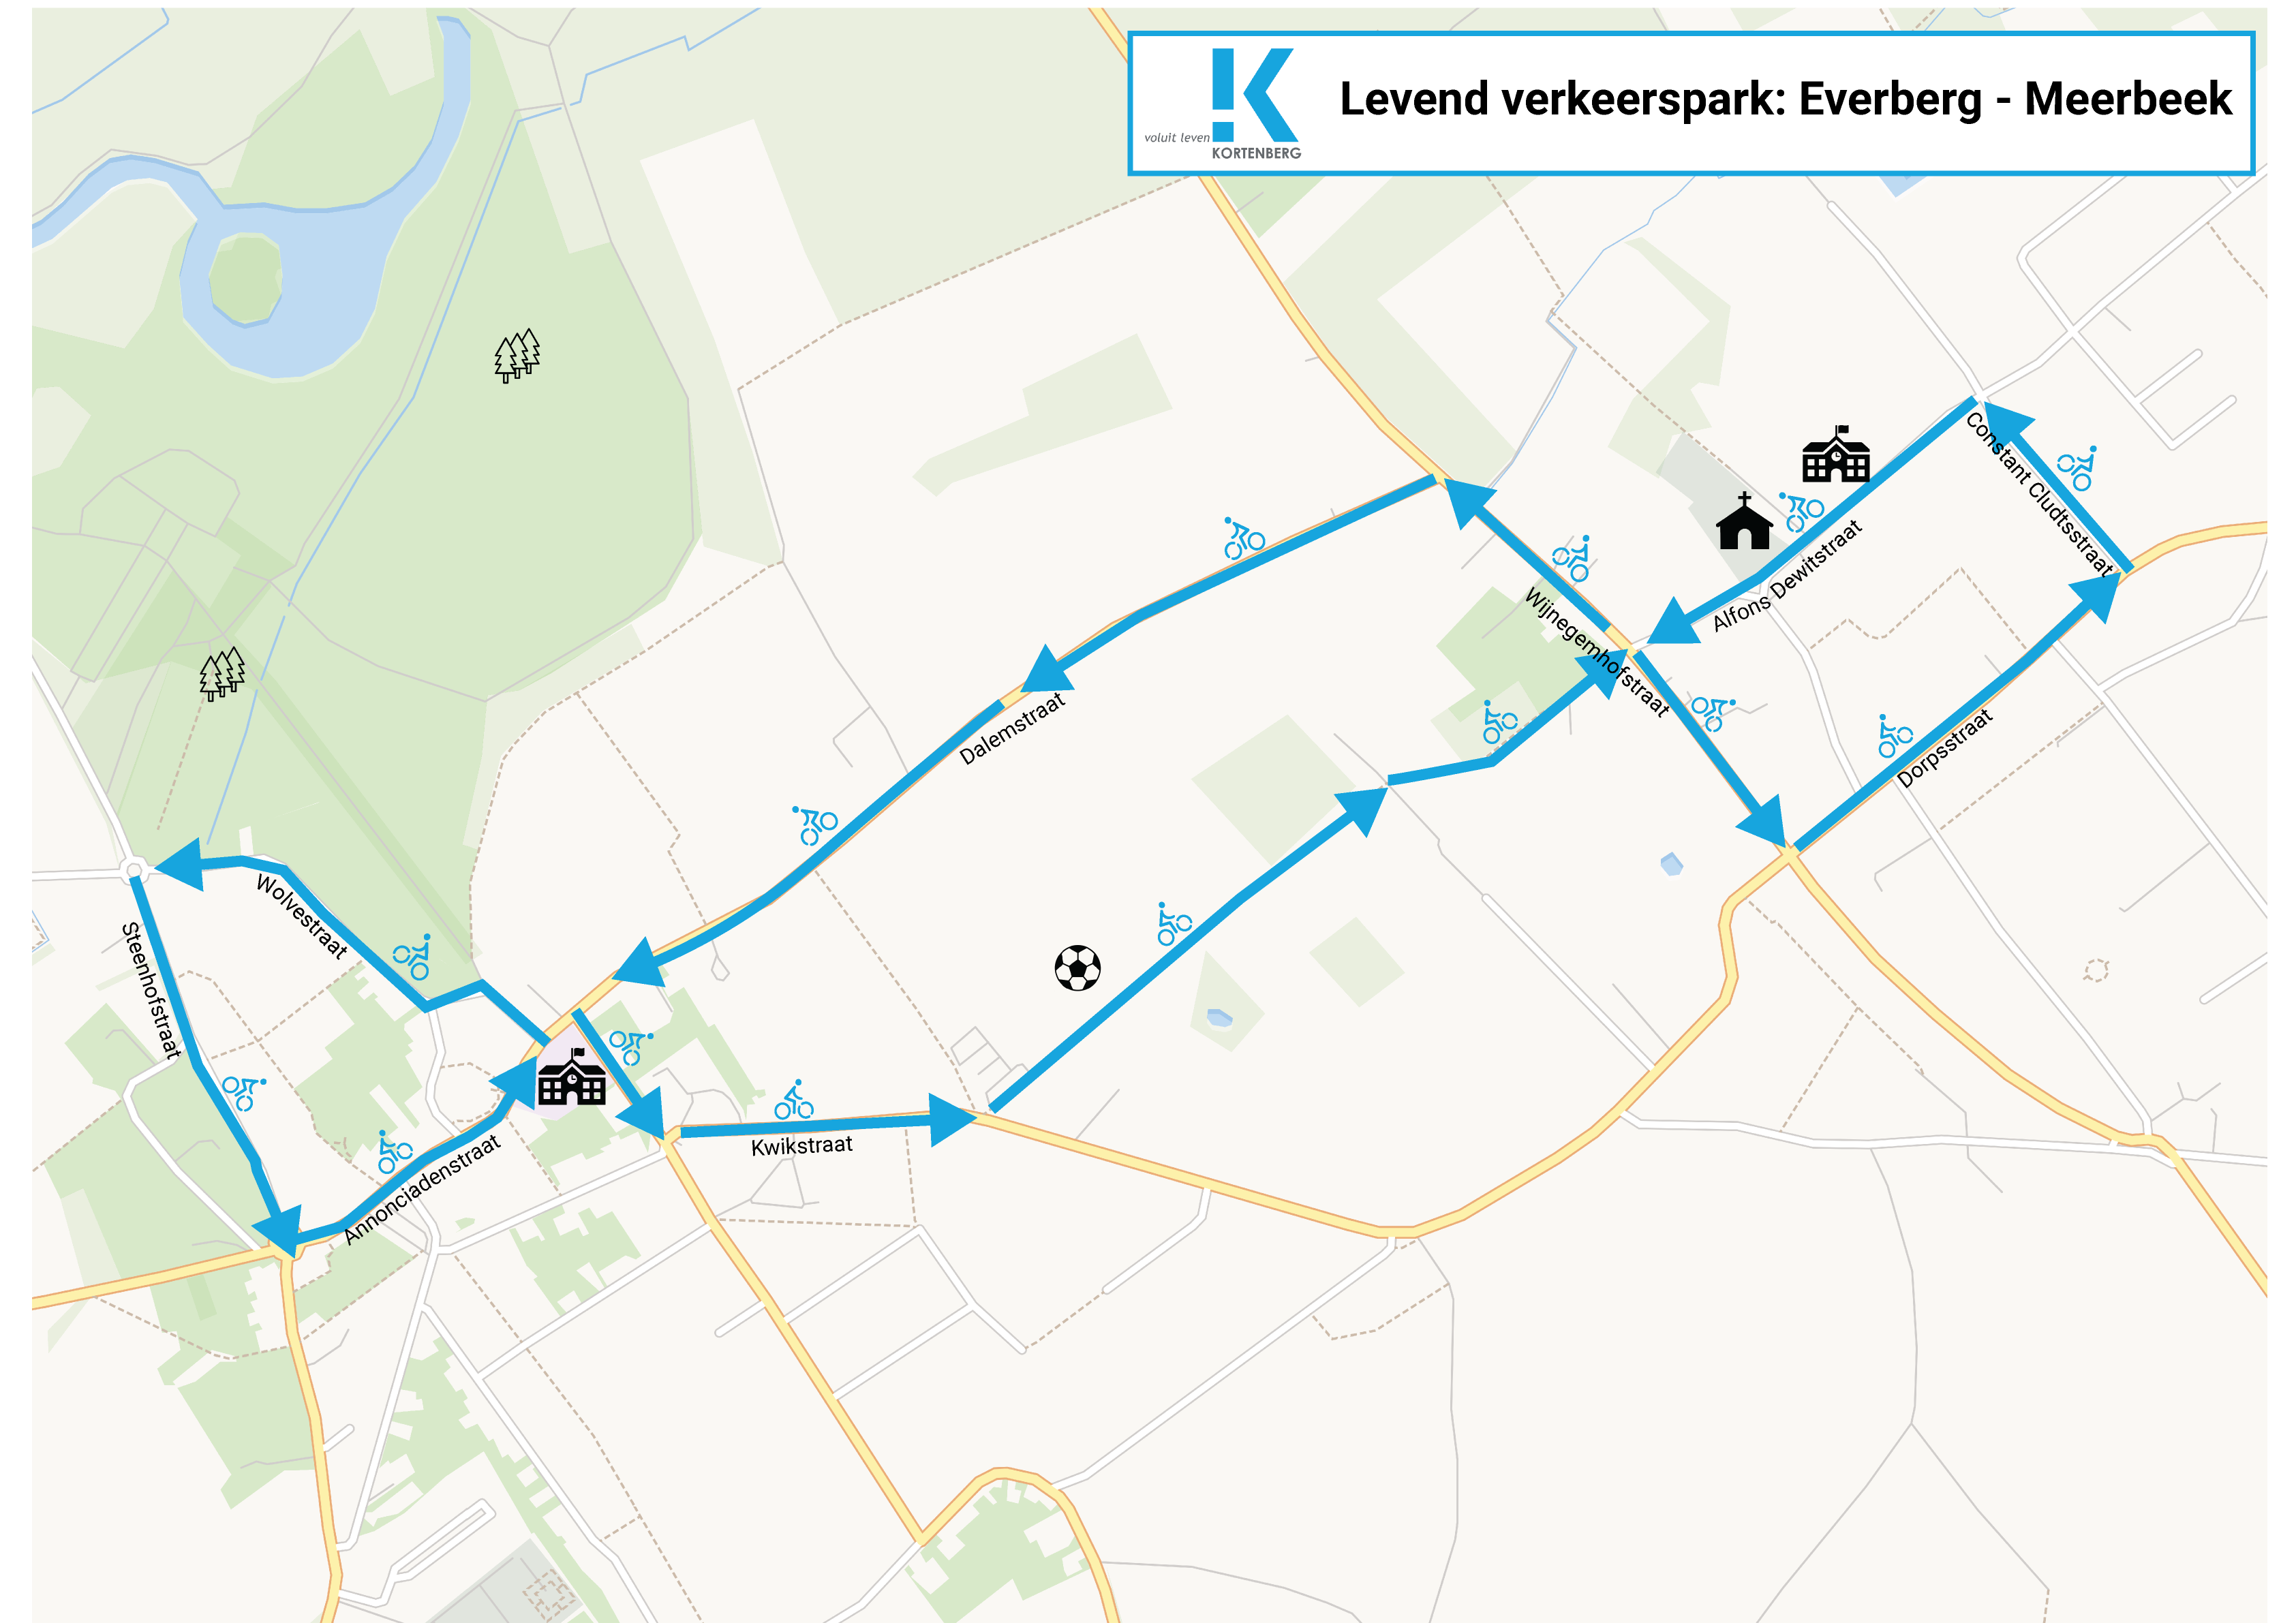 Parcours levend verkeerspark Meerbeek en Everberg